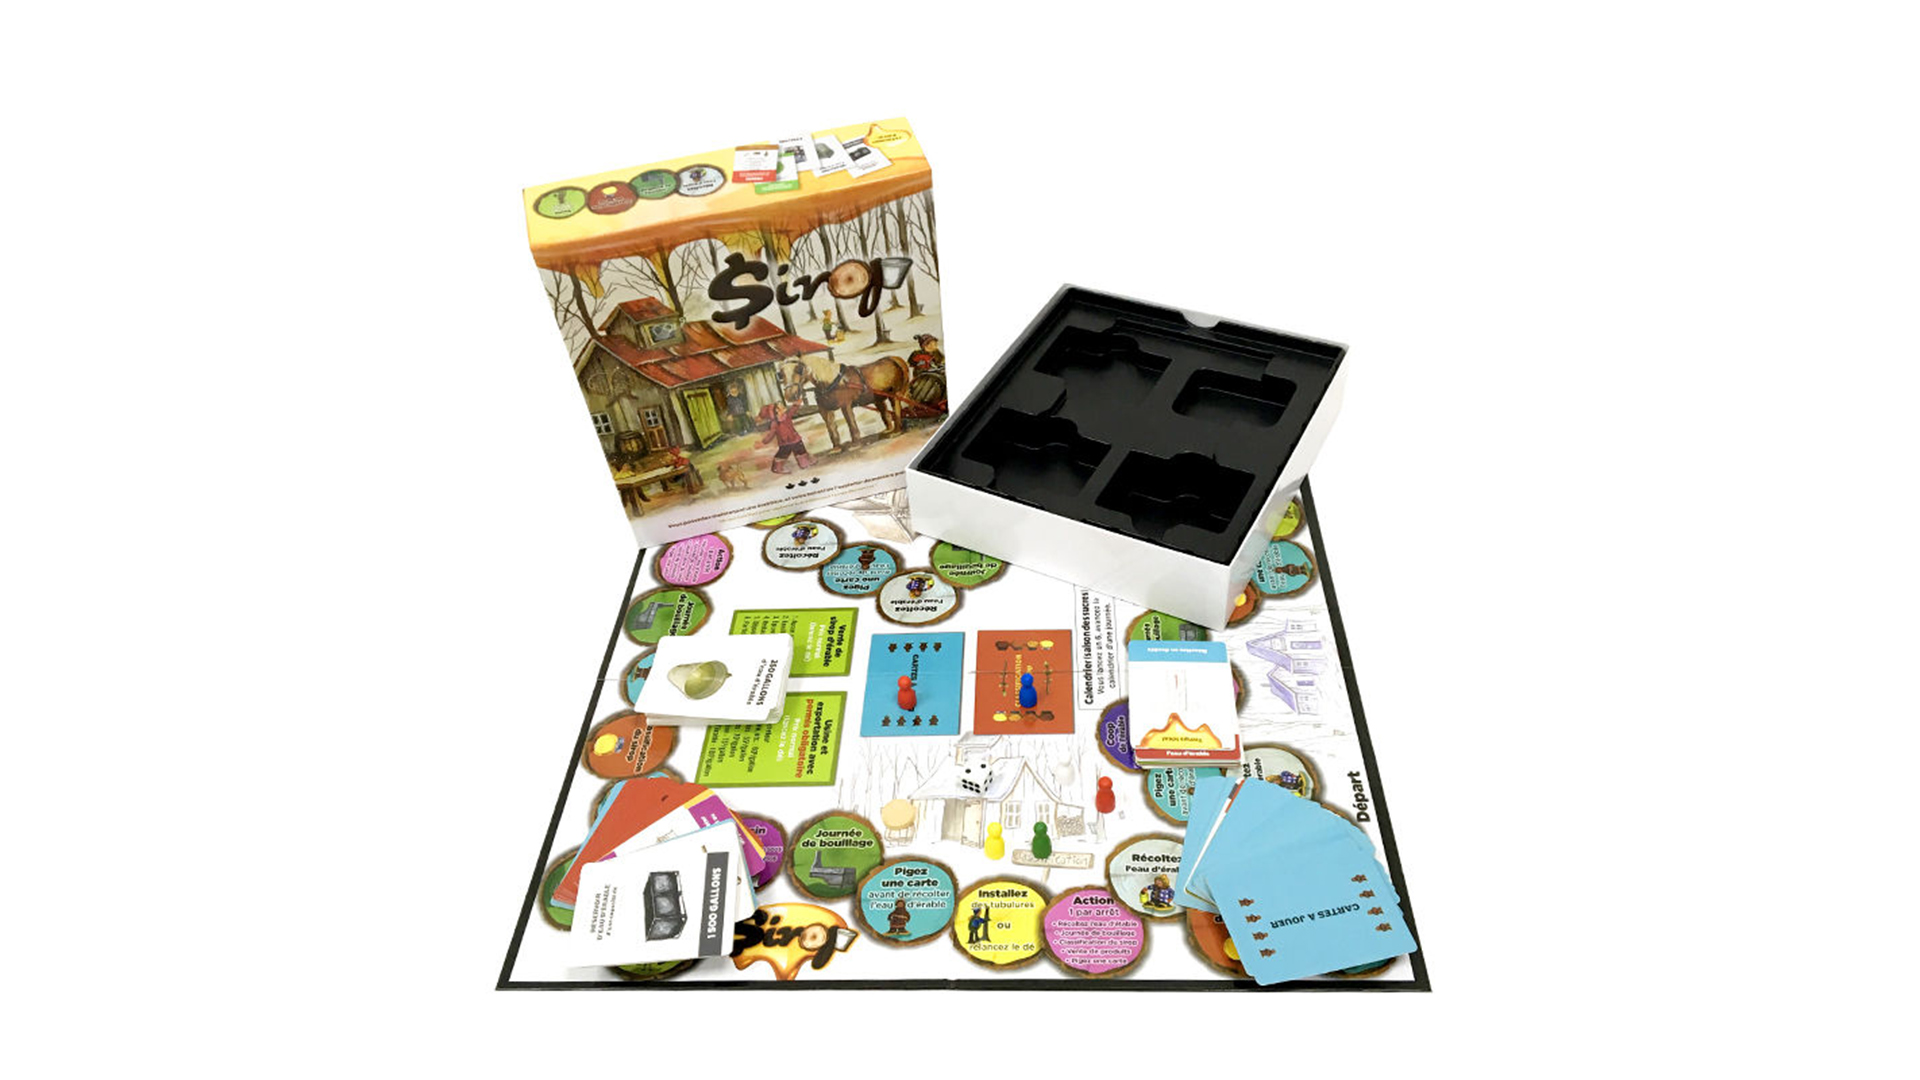 I migliori giochi da tavolo per famiglie per bambini di tutti i tempi Set di giochi da tavolo interattivi Società - Gioco da tavolo